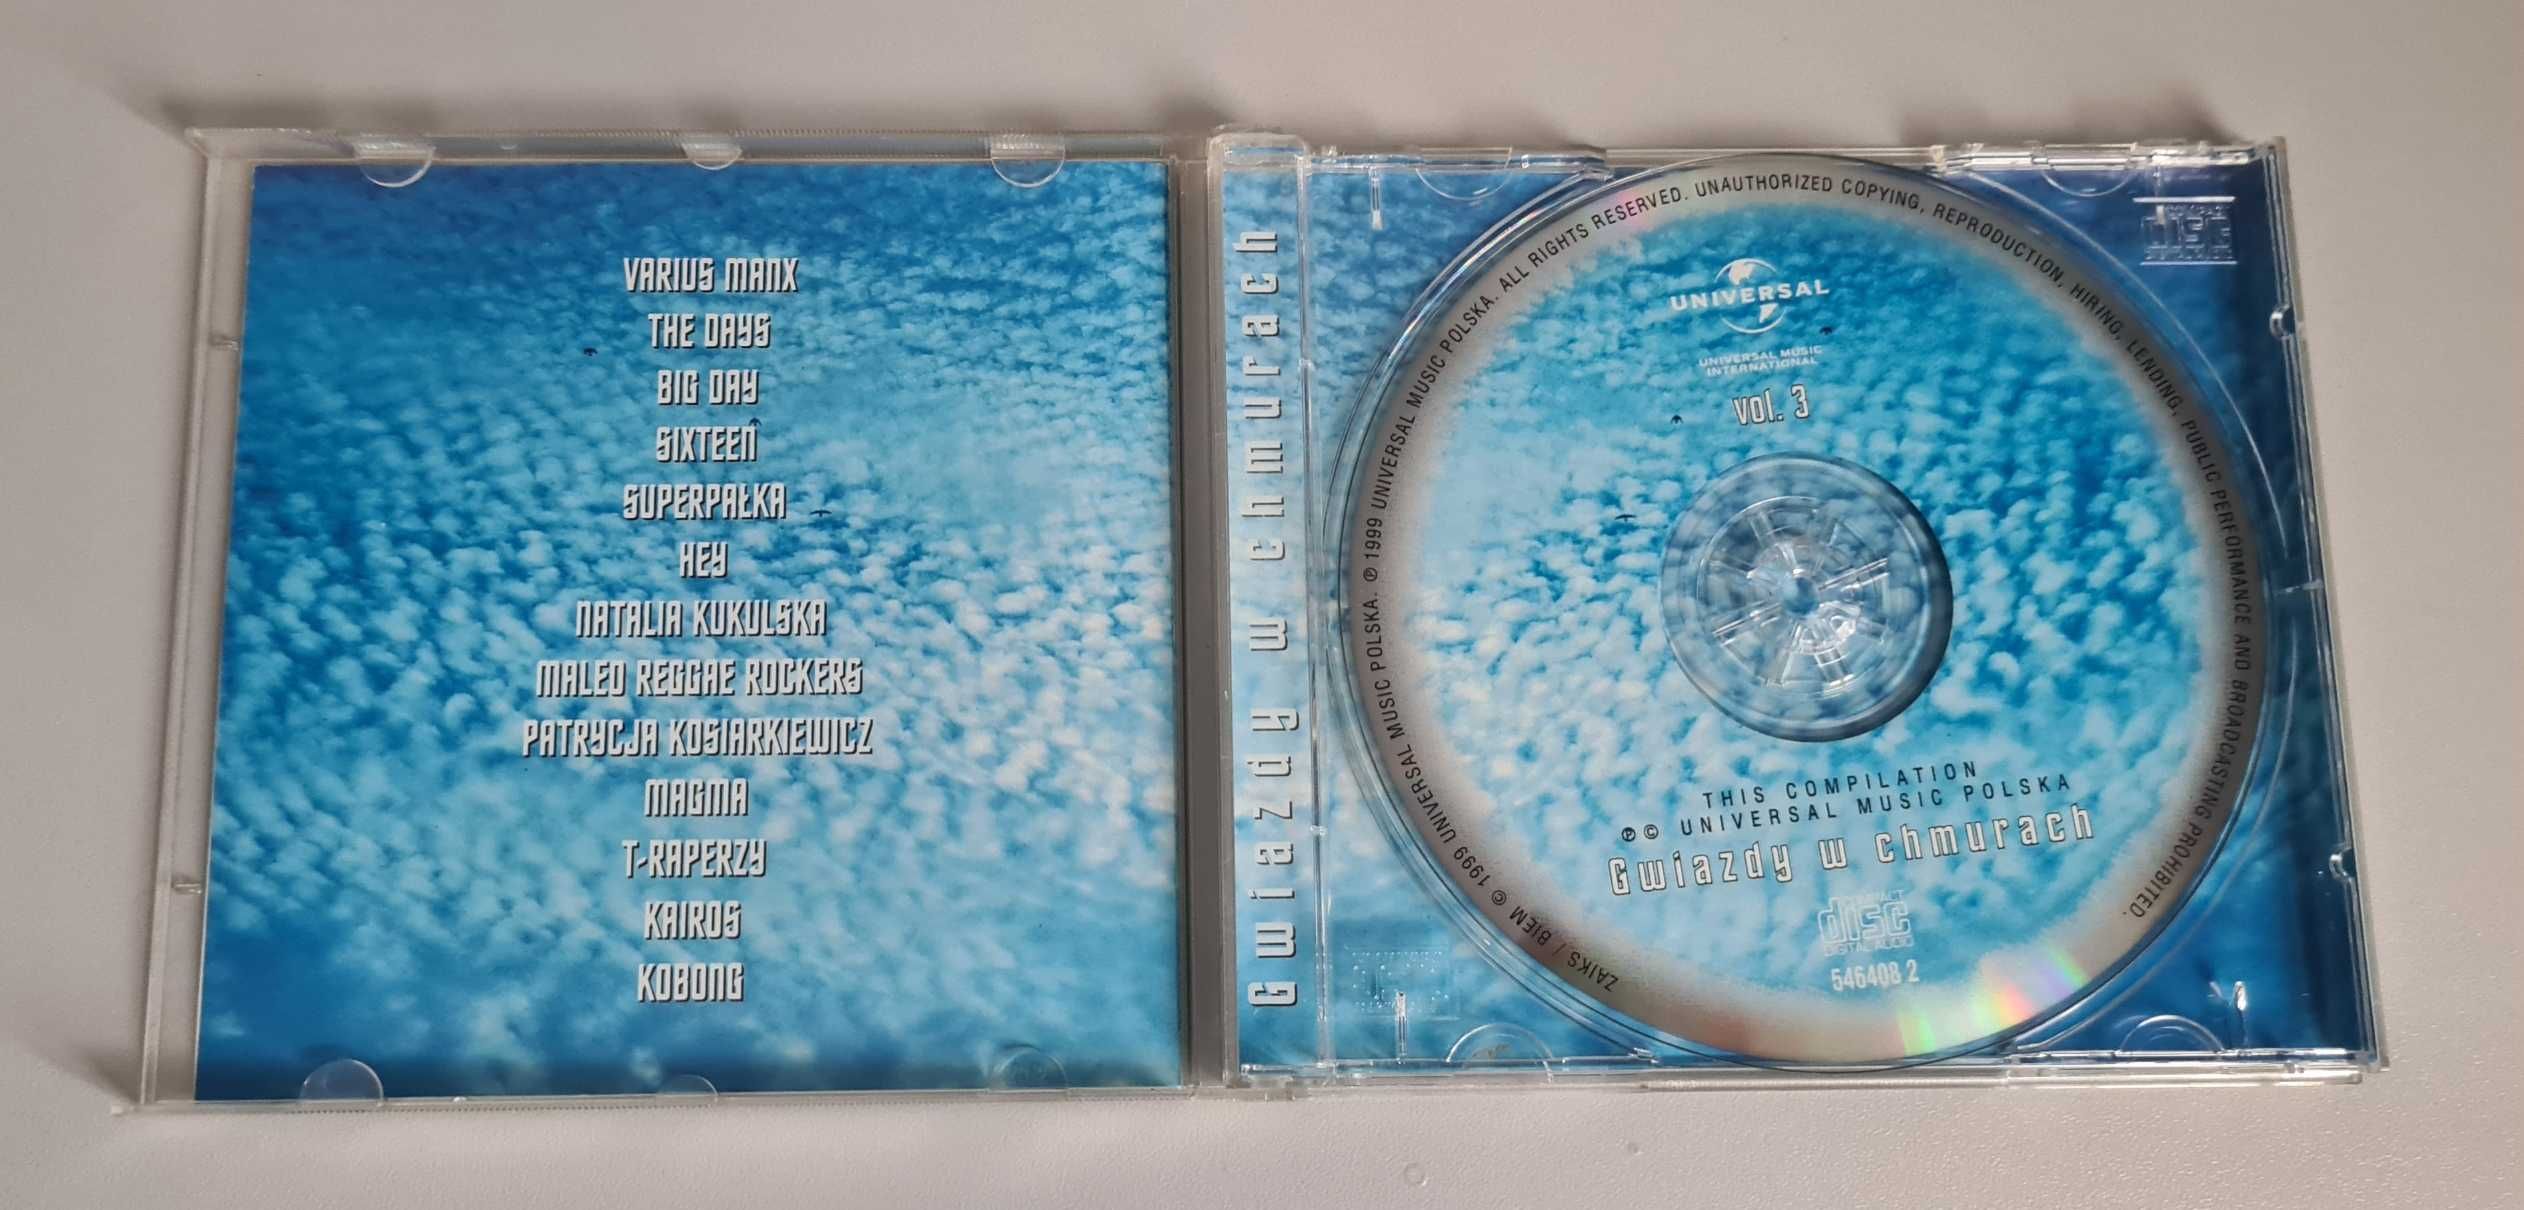 Gwiazdy w chmurach vol 3 cd